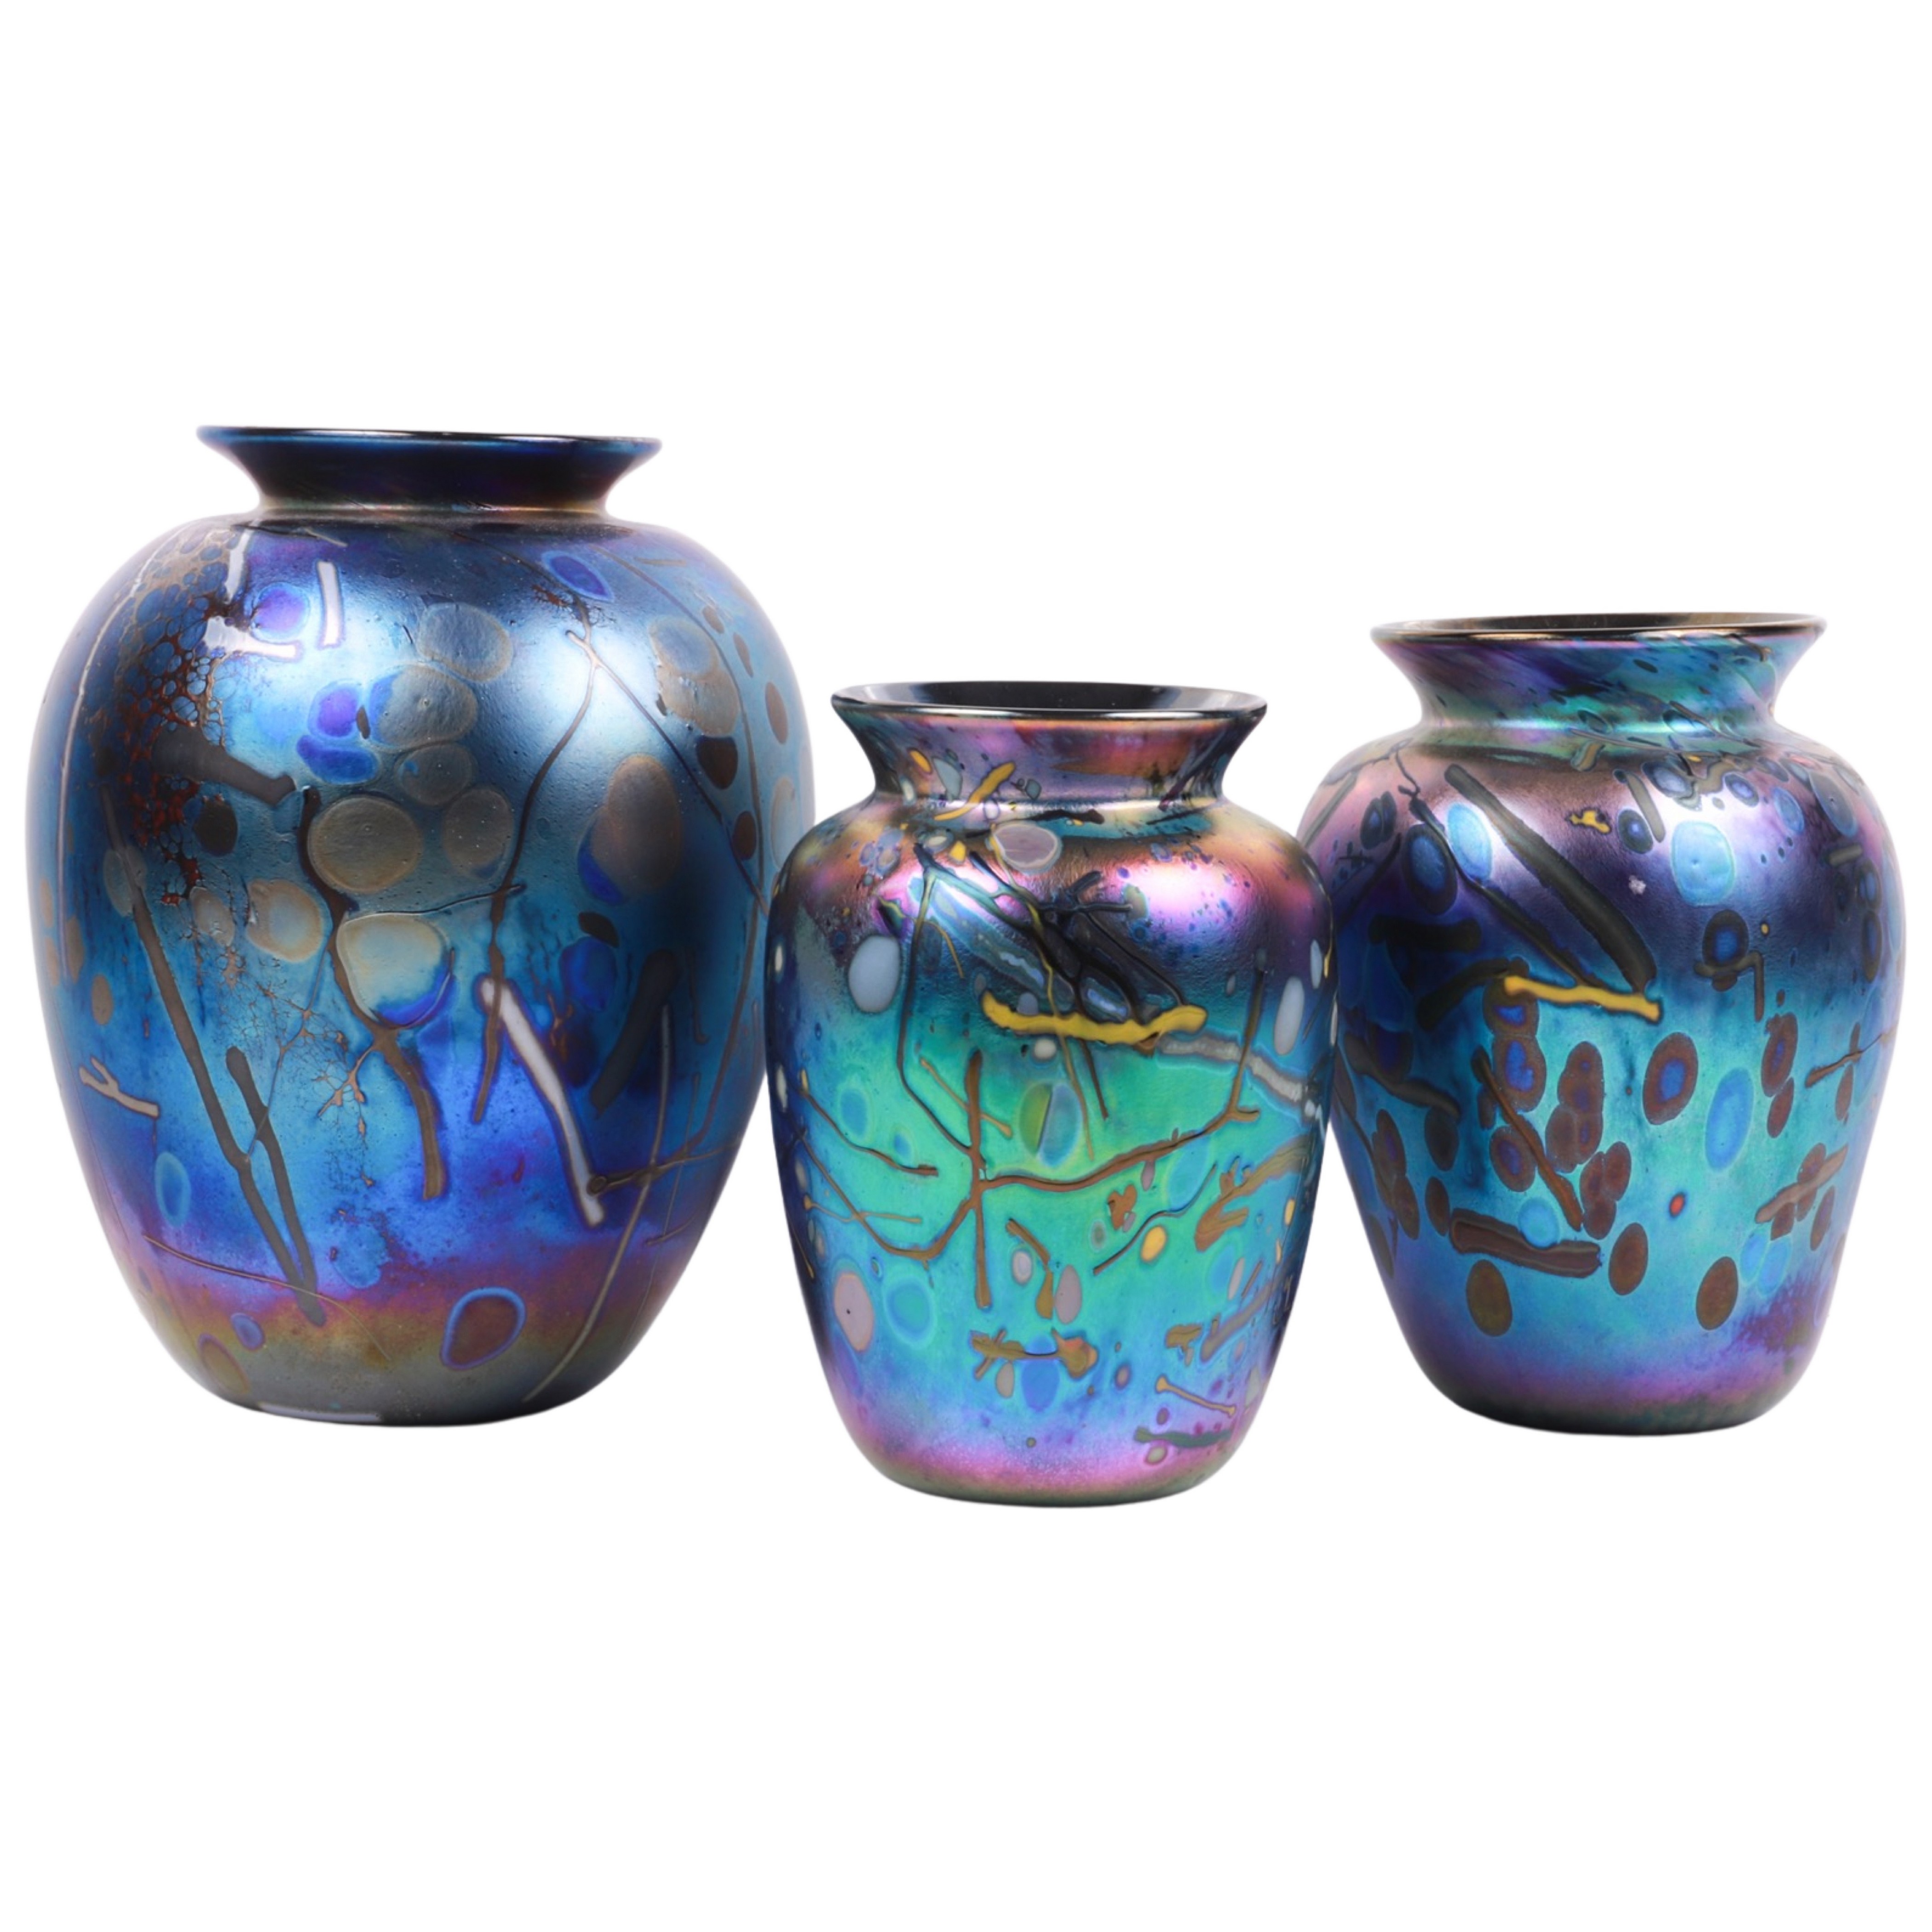  3 Arthur Allison art glass vases  3b45bc